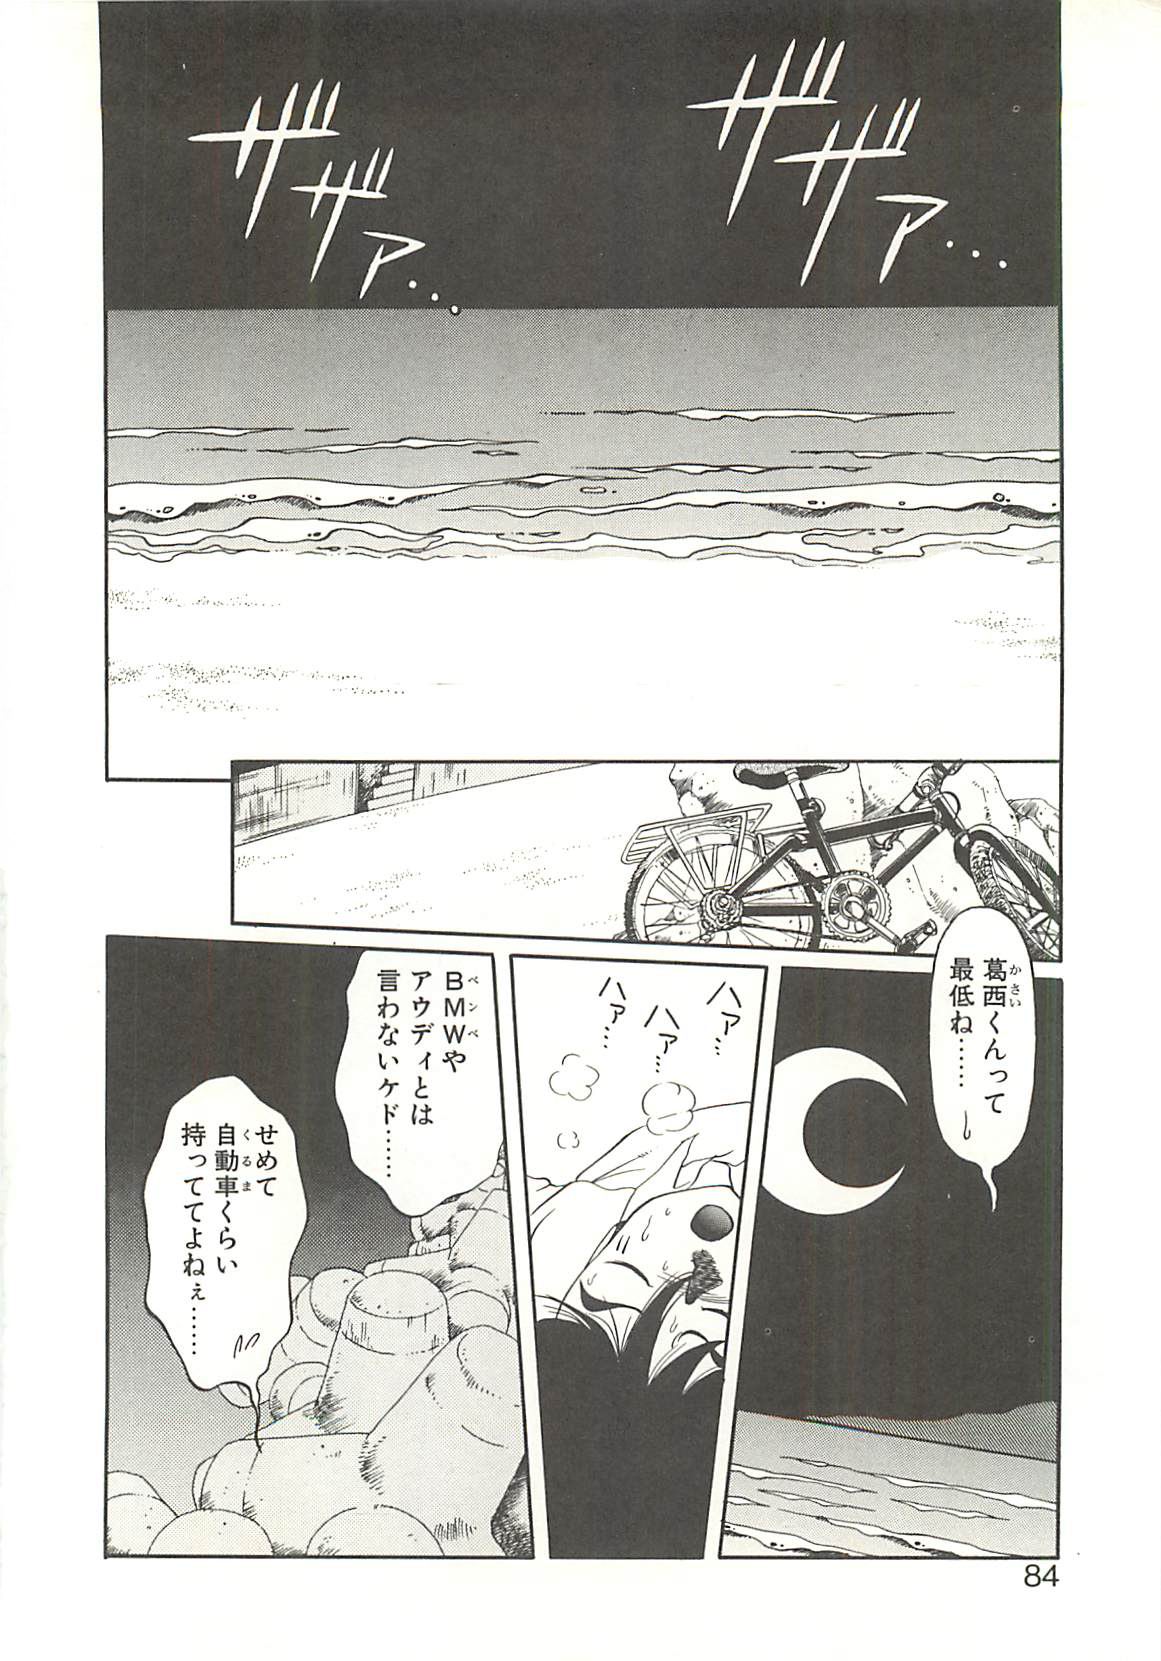 [Soramoto Koh] Ref・Rain (成年コミック) [空本光王] Ref・Rain  -りふれいん-